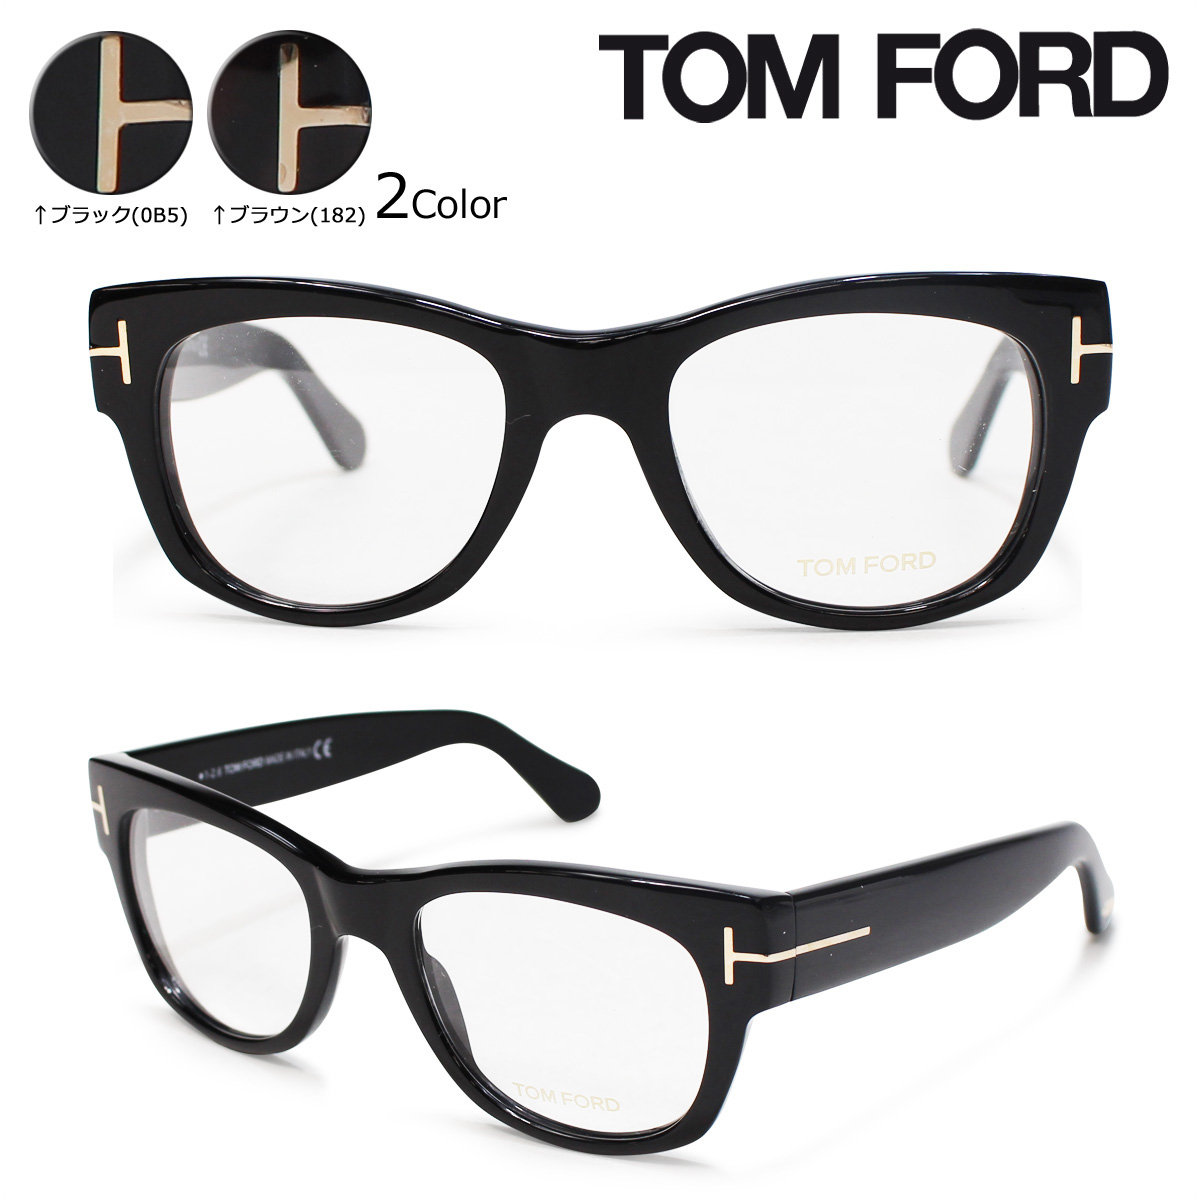 【送料無料】 トムフォード TOM FORD メガネ アイウェア 眼鏡 TOM FORD FT5040 トムフォード メガネ 眼鏡 メンズ レディース アイウェア ウェリントン イタリア製